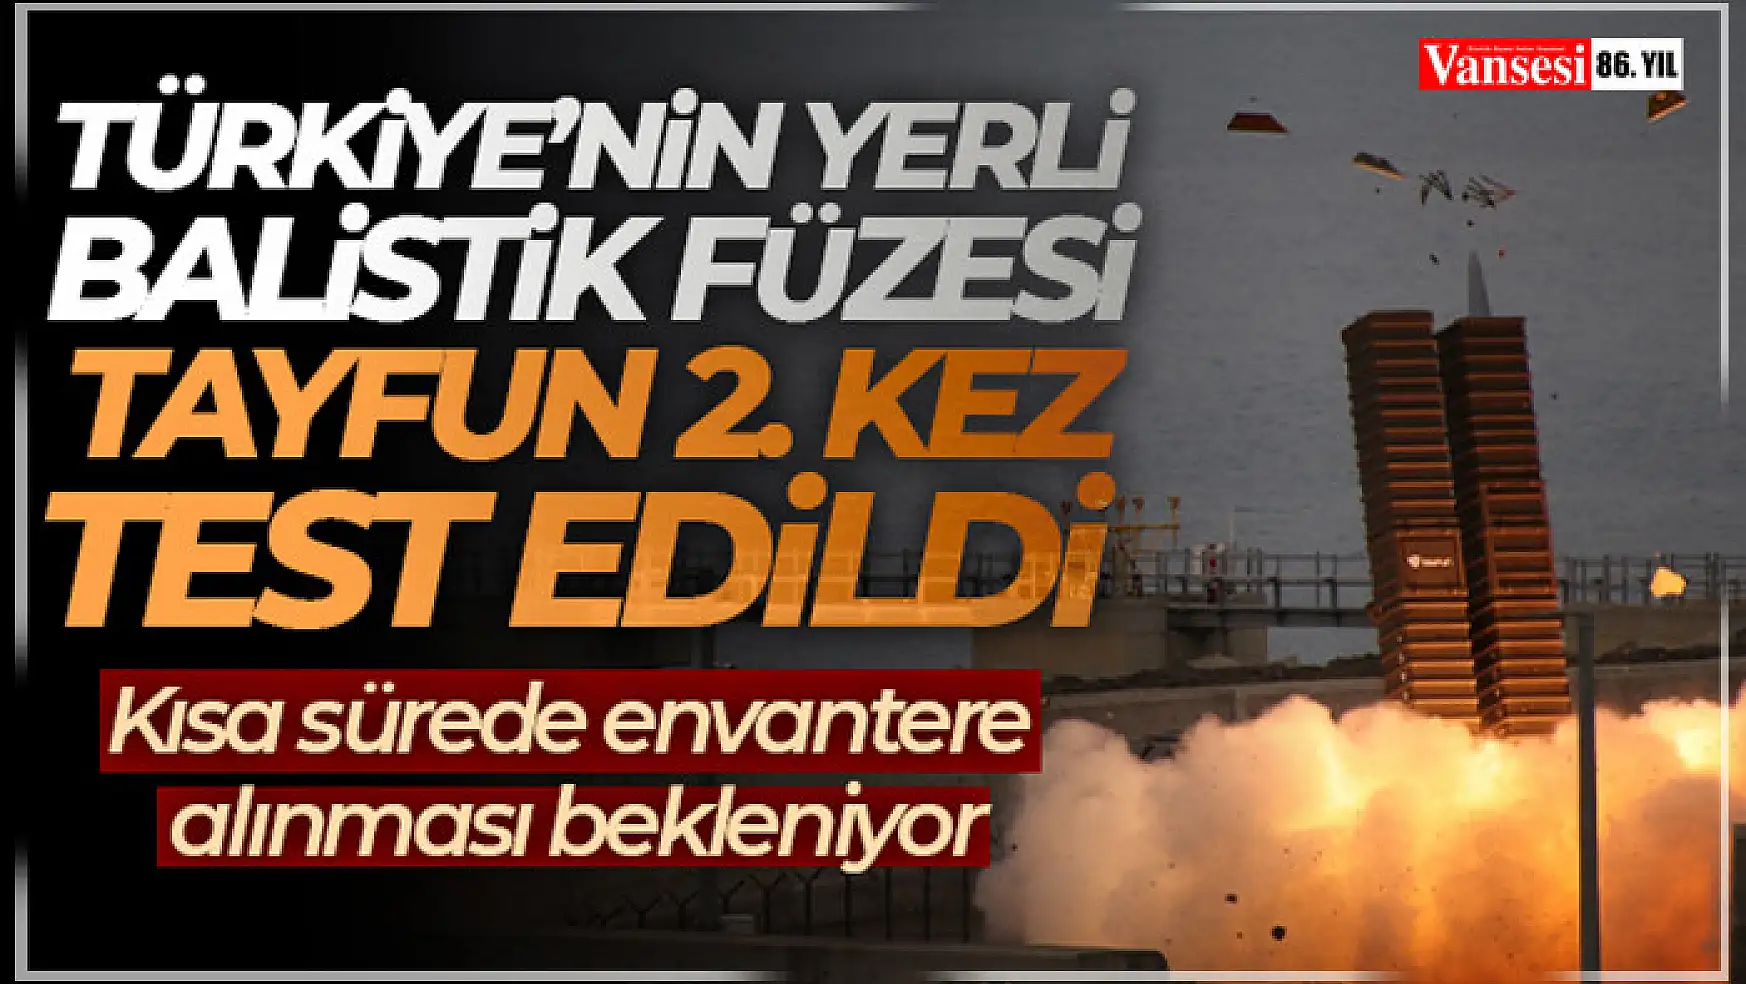 Türkiye'nin yerli balistik füzesi  test atışı gerçekleştirildi